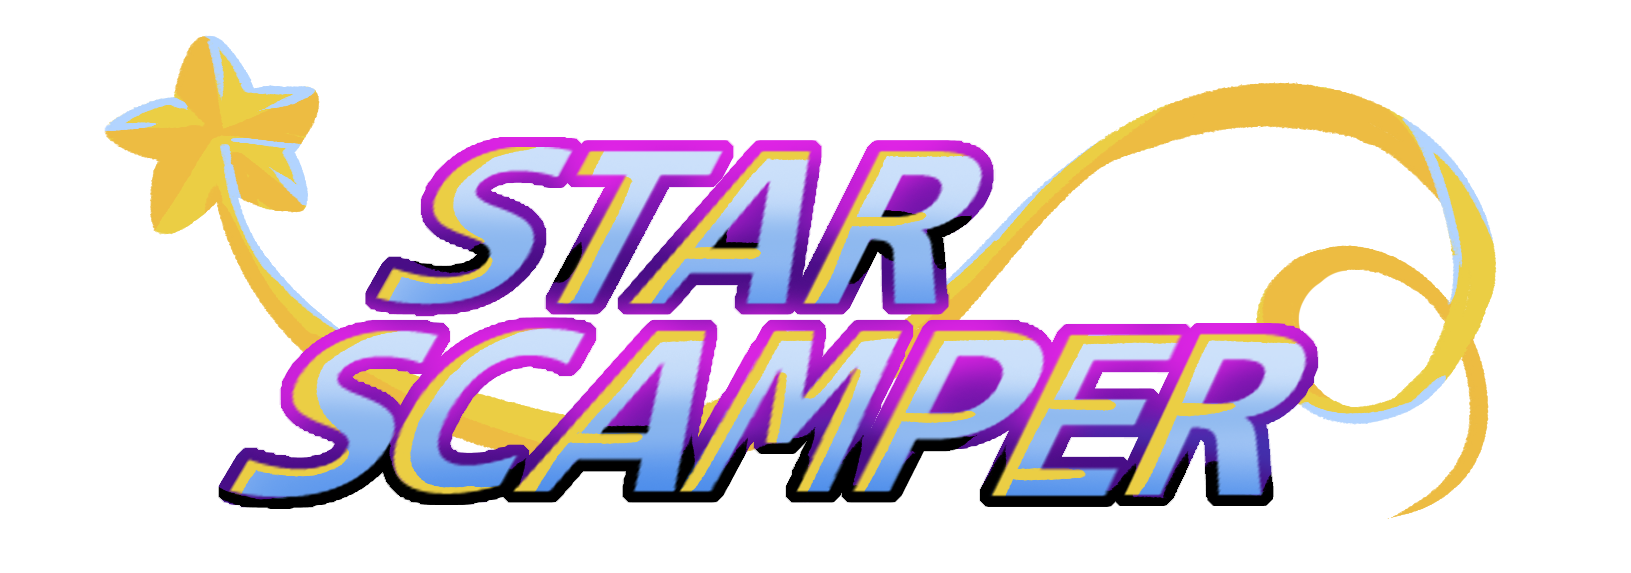 Star Scamper